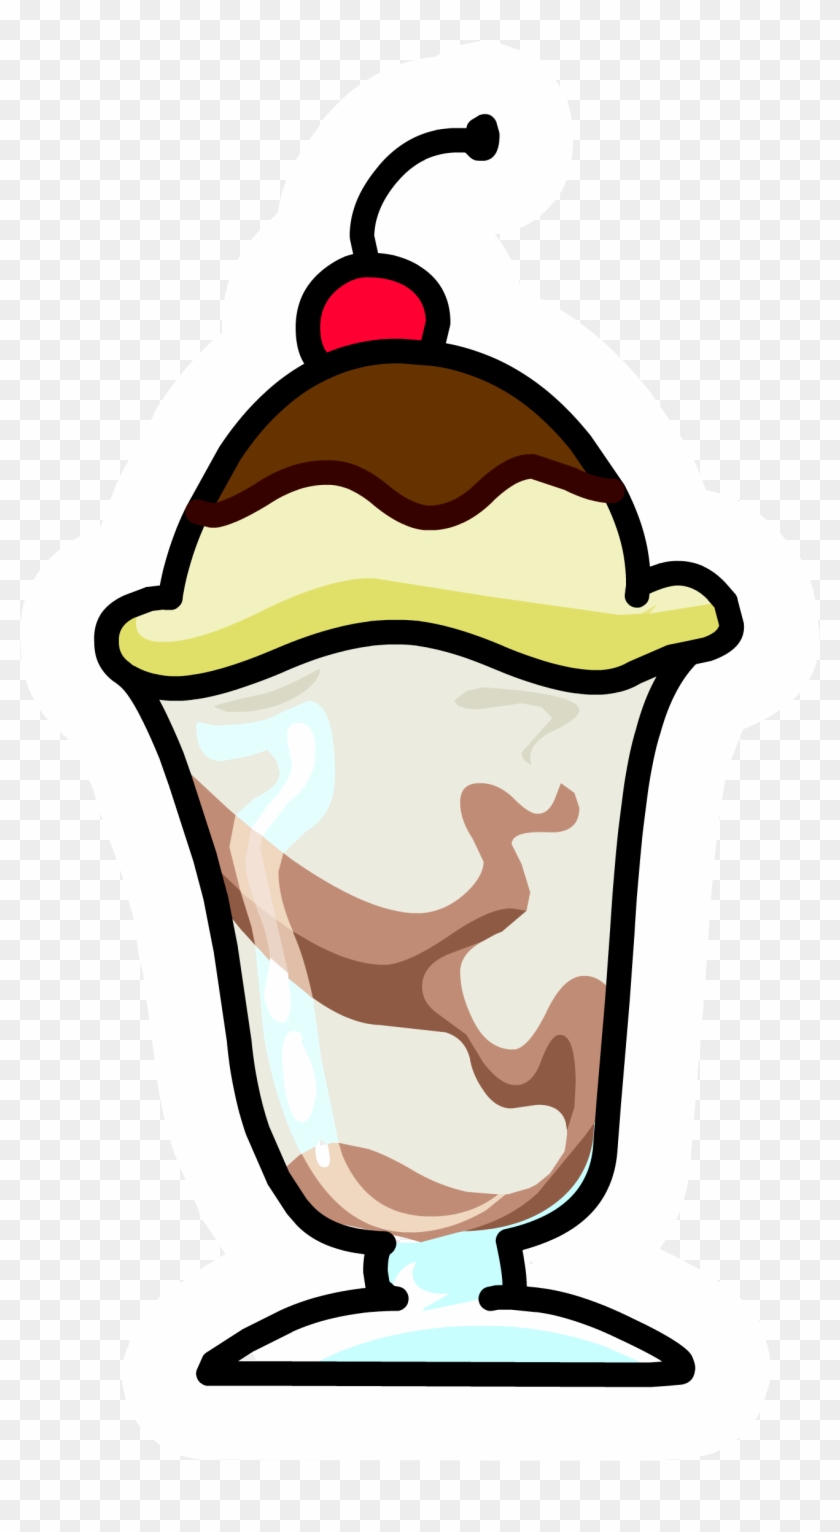 Ice Cream Sundae Clipart - Ice Cream Sundae Cartoon - Free Transparent PNG  Clipart Images Download